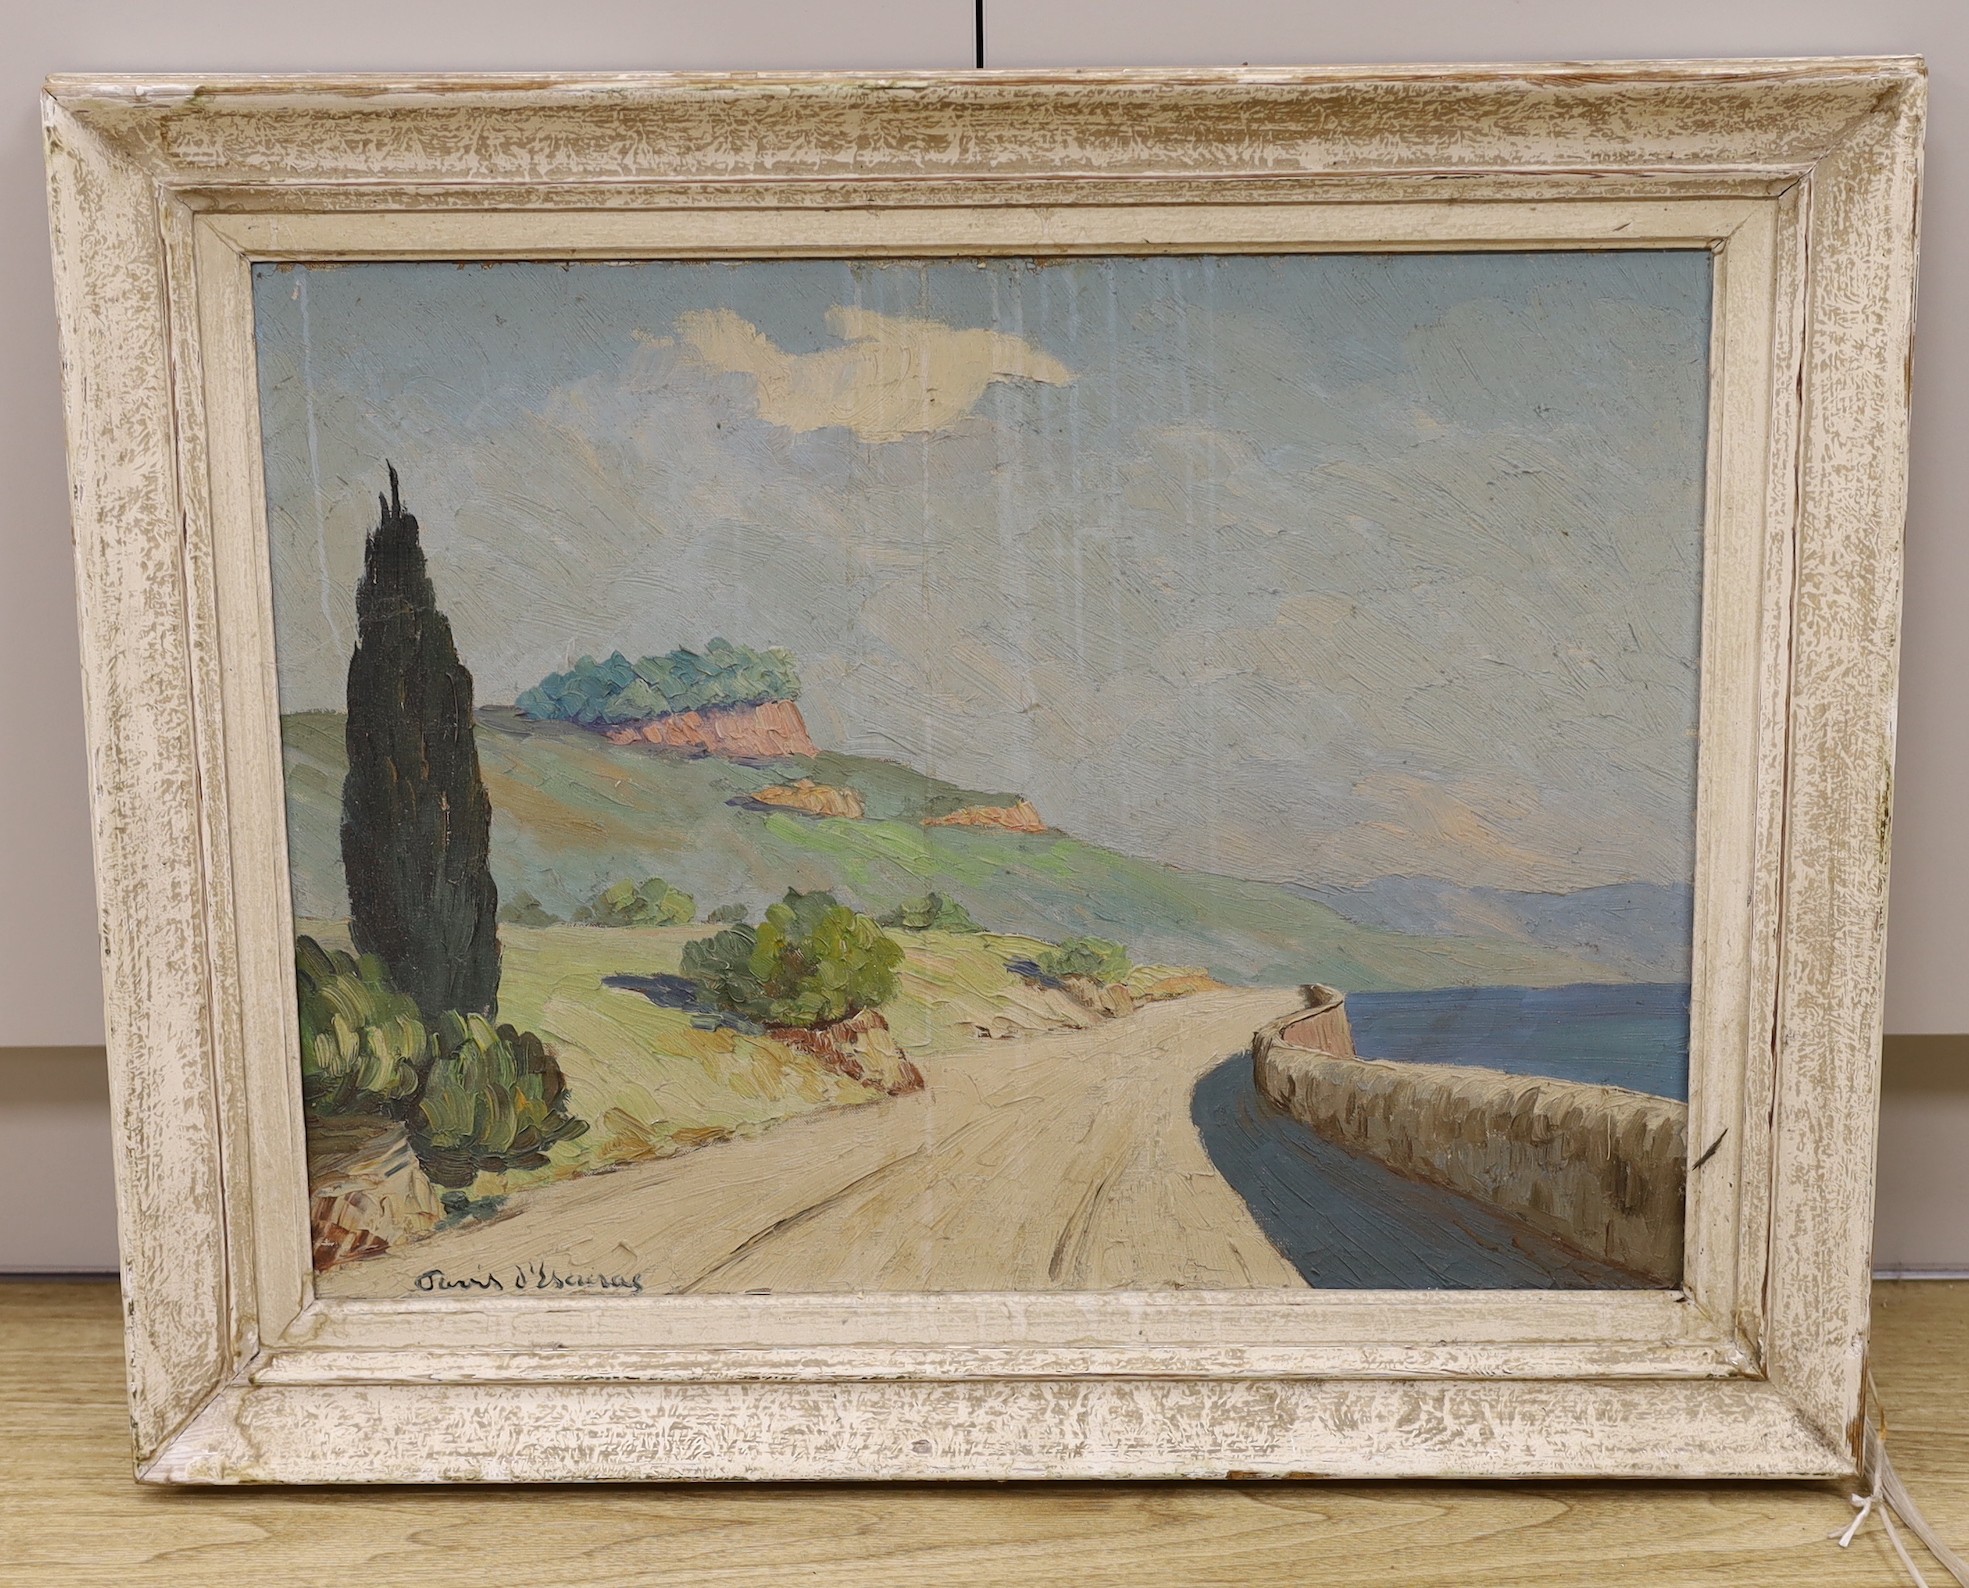 Joseph Pavis D'Escurac (1882-1946), oil on canvas, Lakeside road, signed, 45 x 60cm